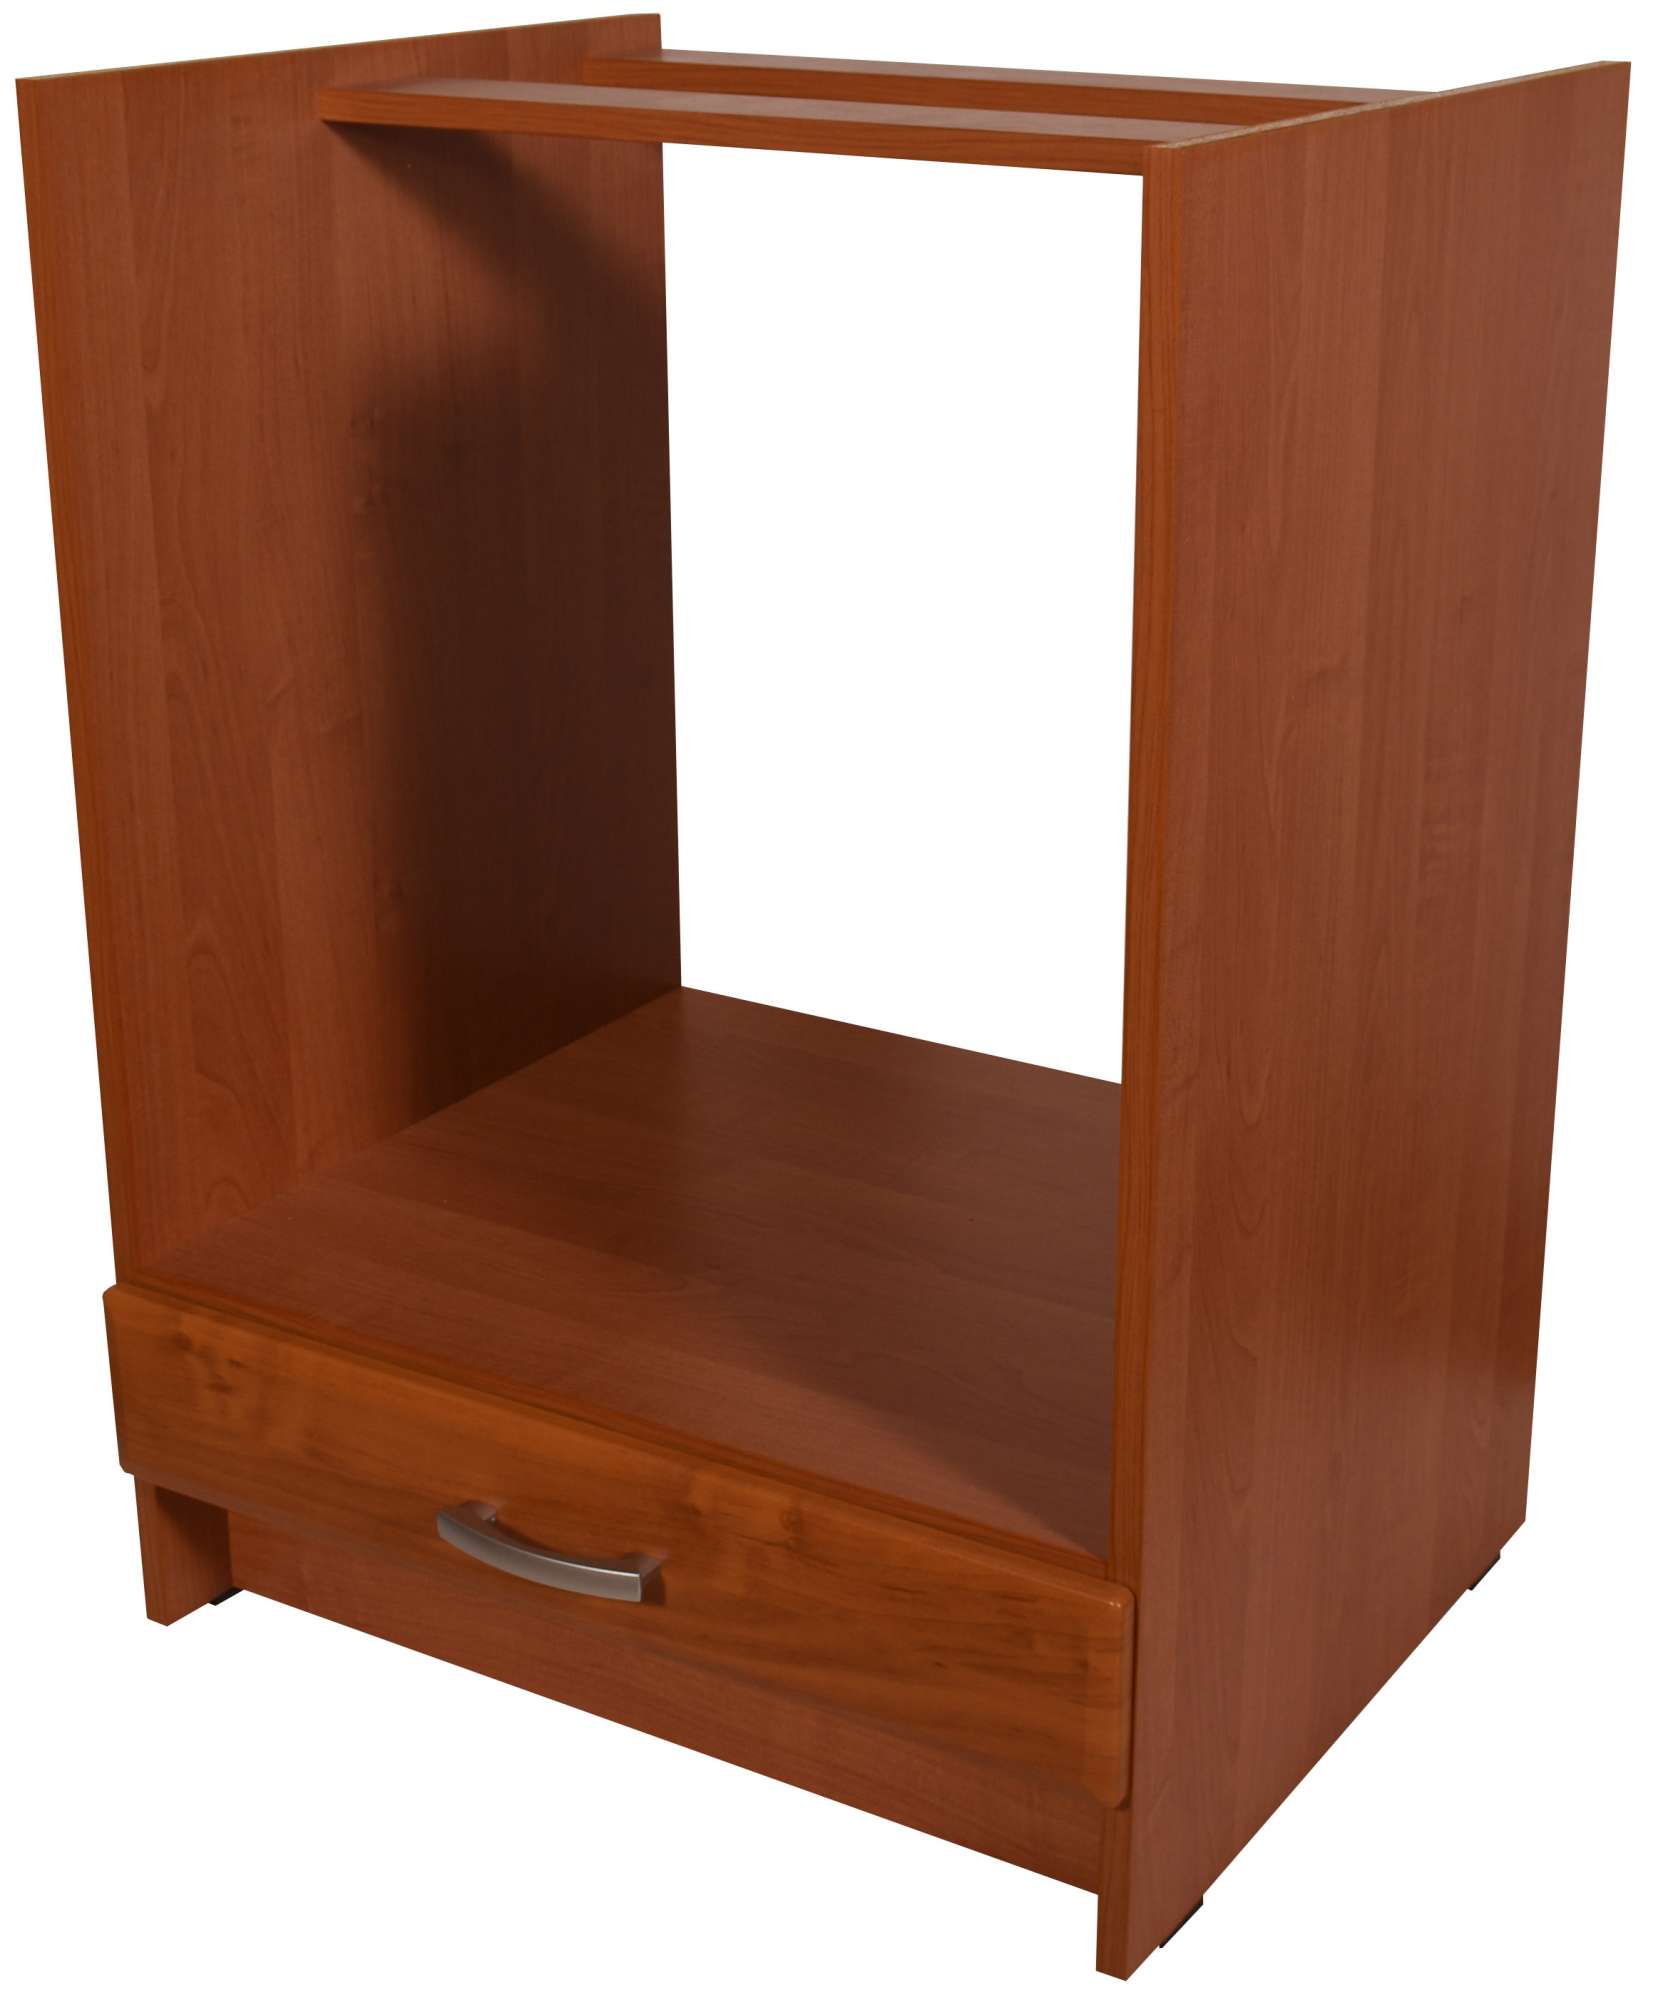 Kuchyňská skříňka pro vestavnou troubu olše 60 cm